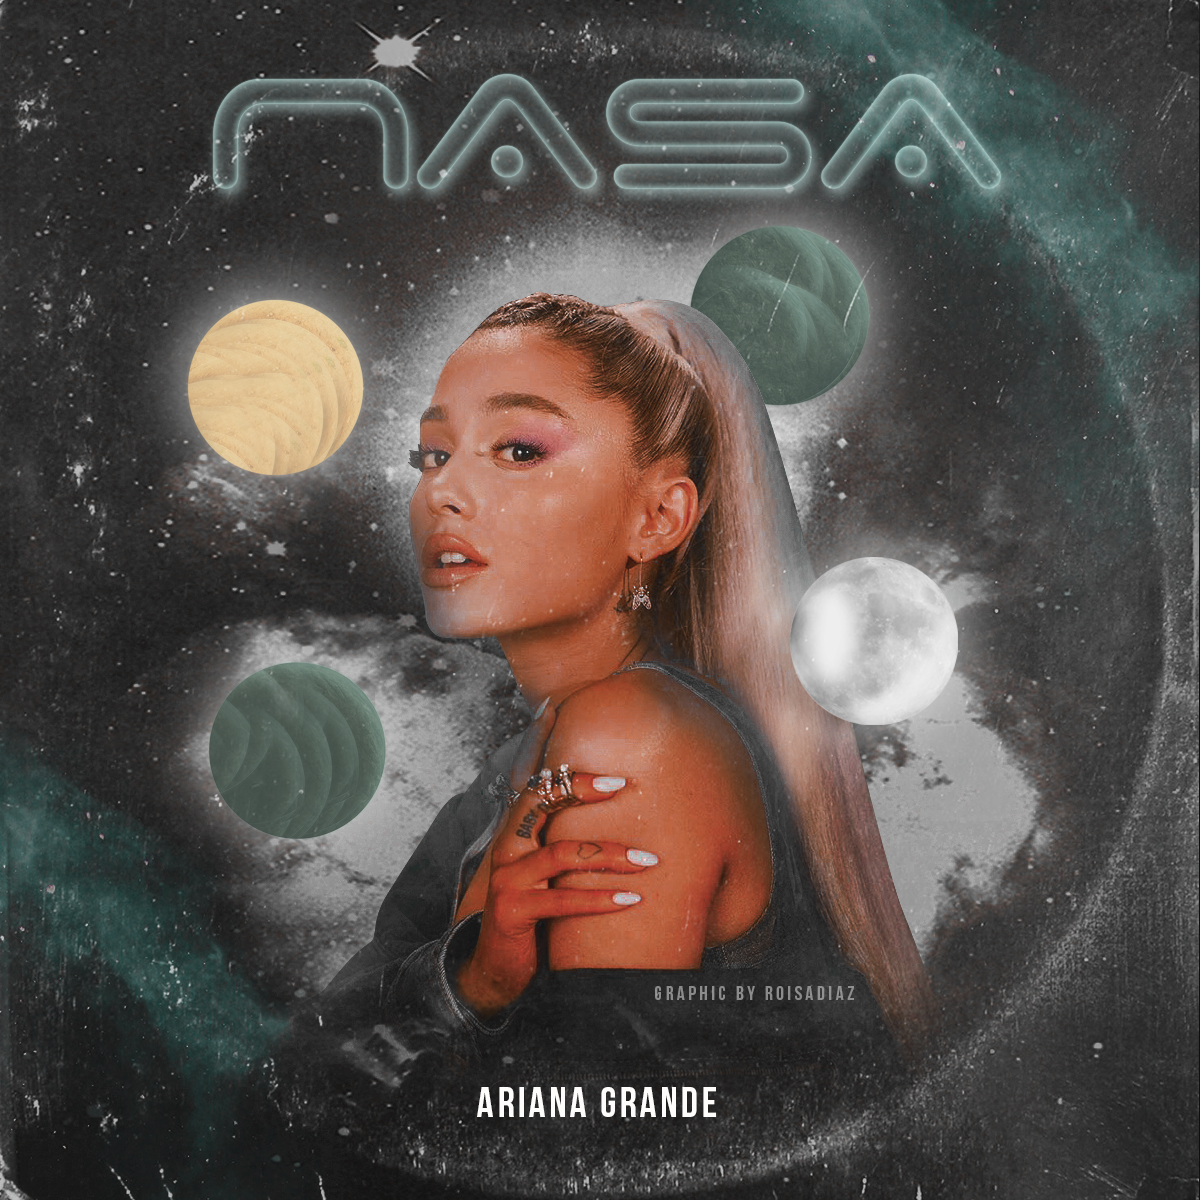 Обложка песни какая есть анет. Ariana grande обложка альбома.